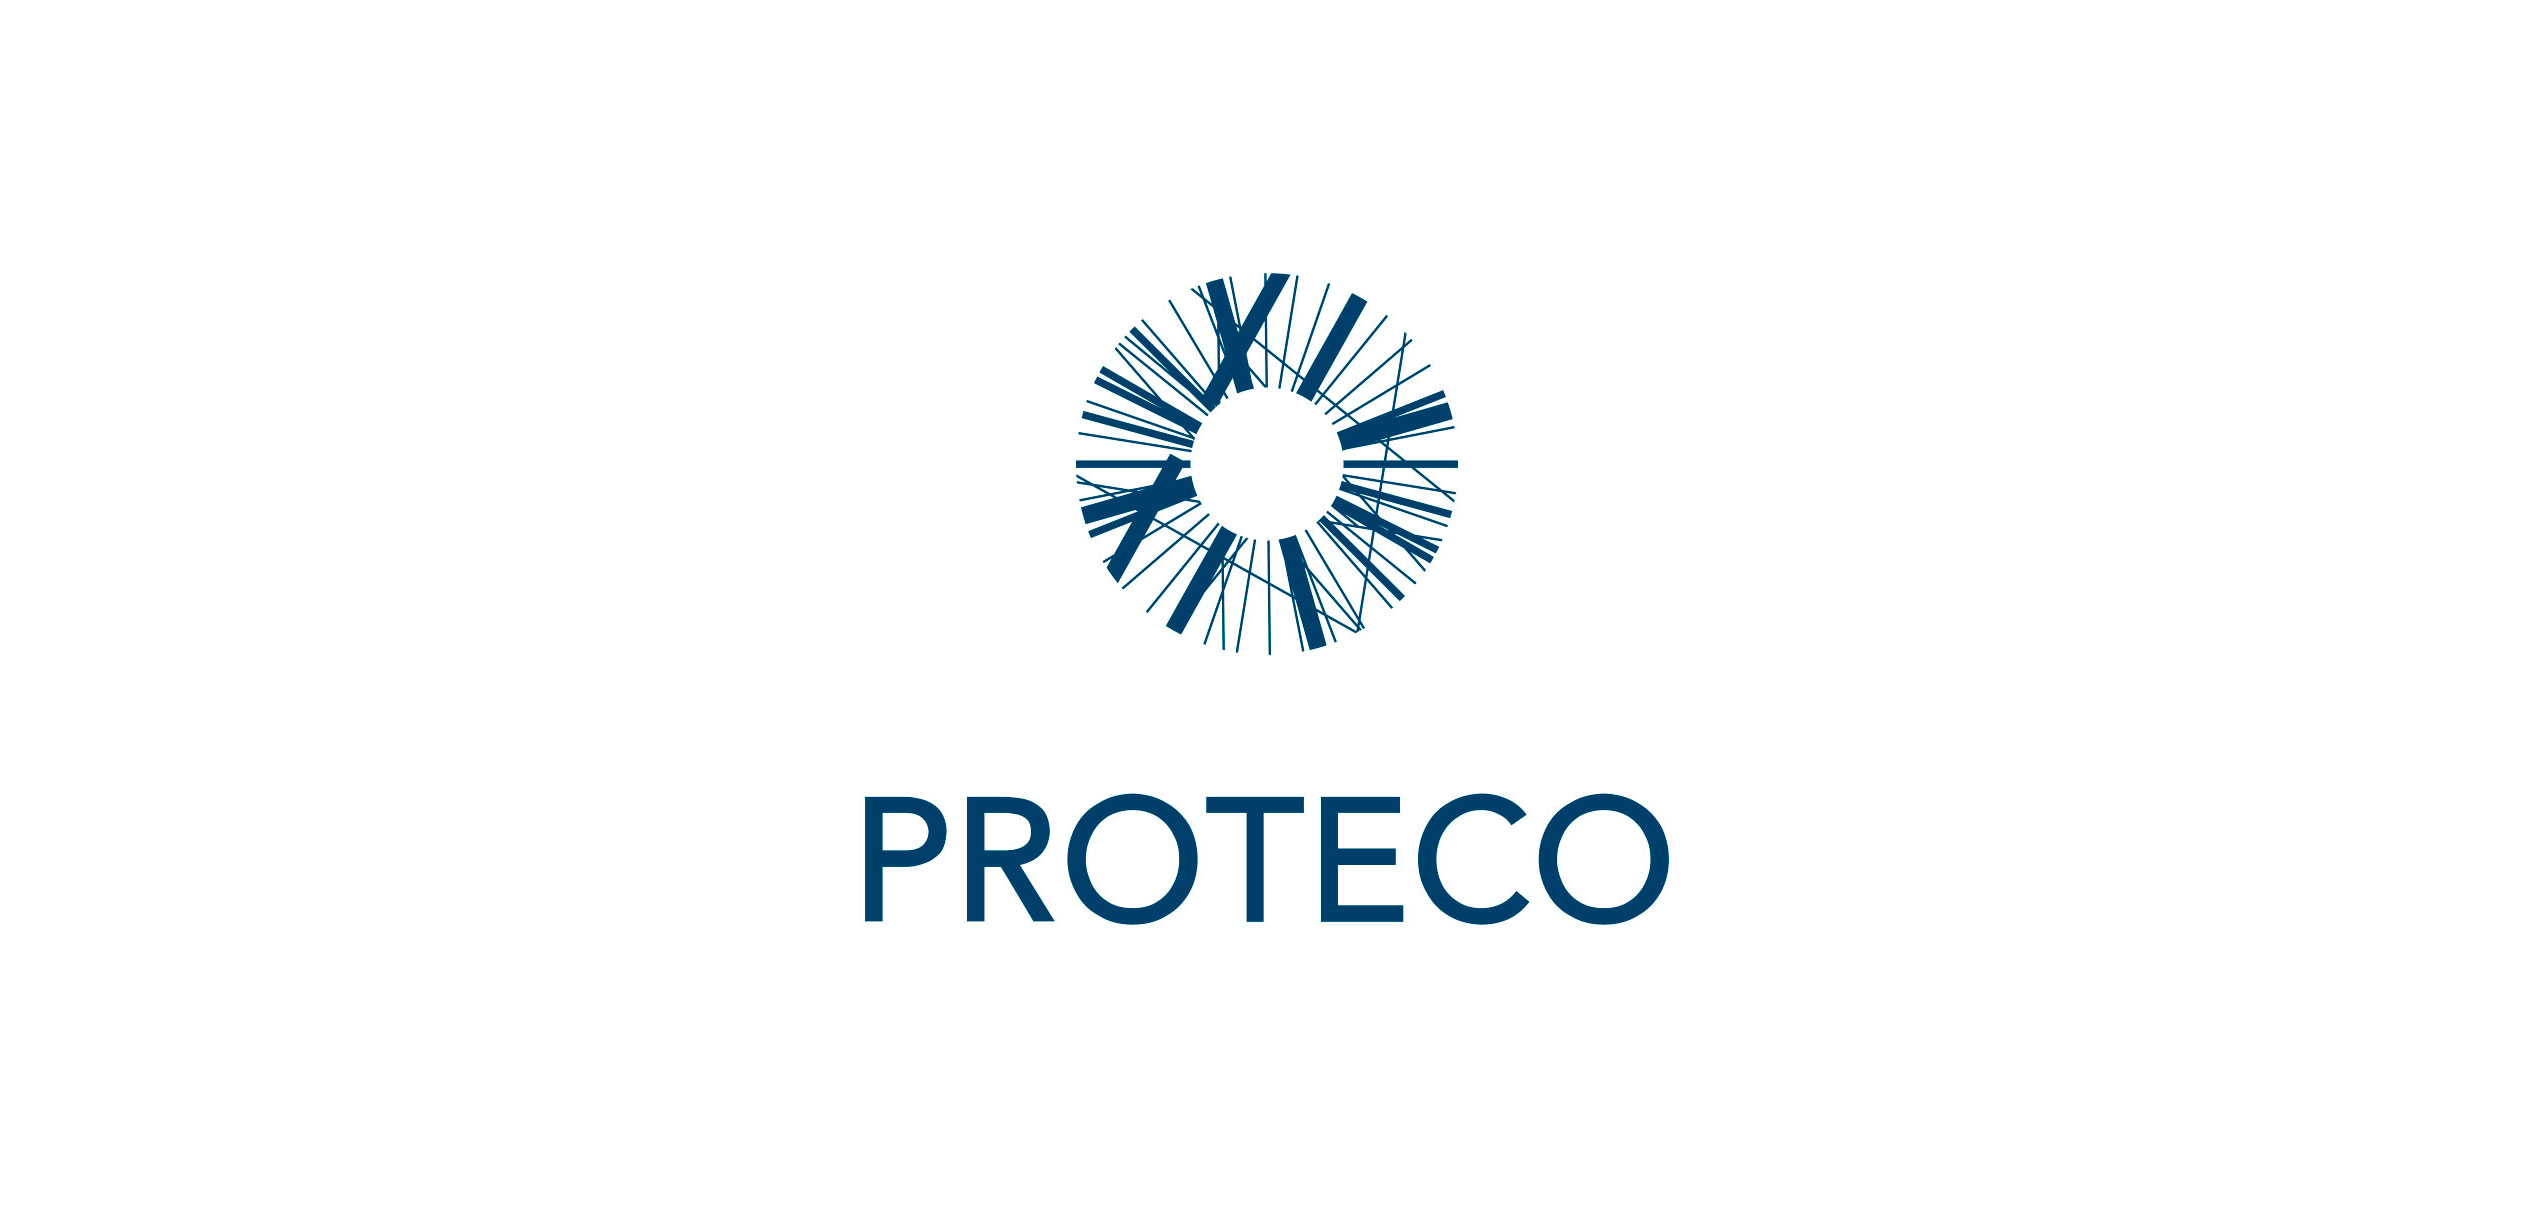 Протеко представляет новый сервис для докторов – Marketplace PROTECO!